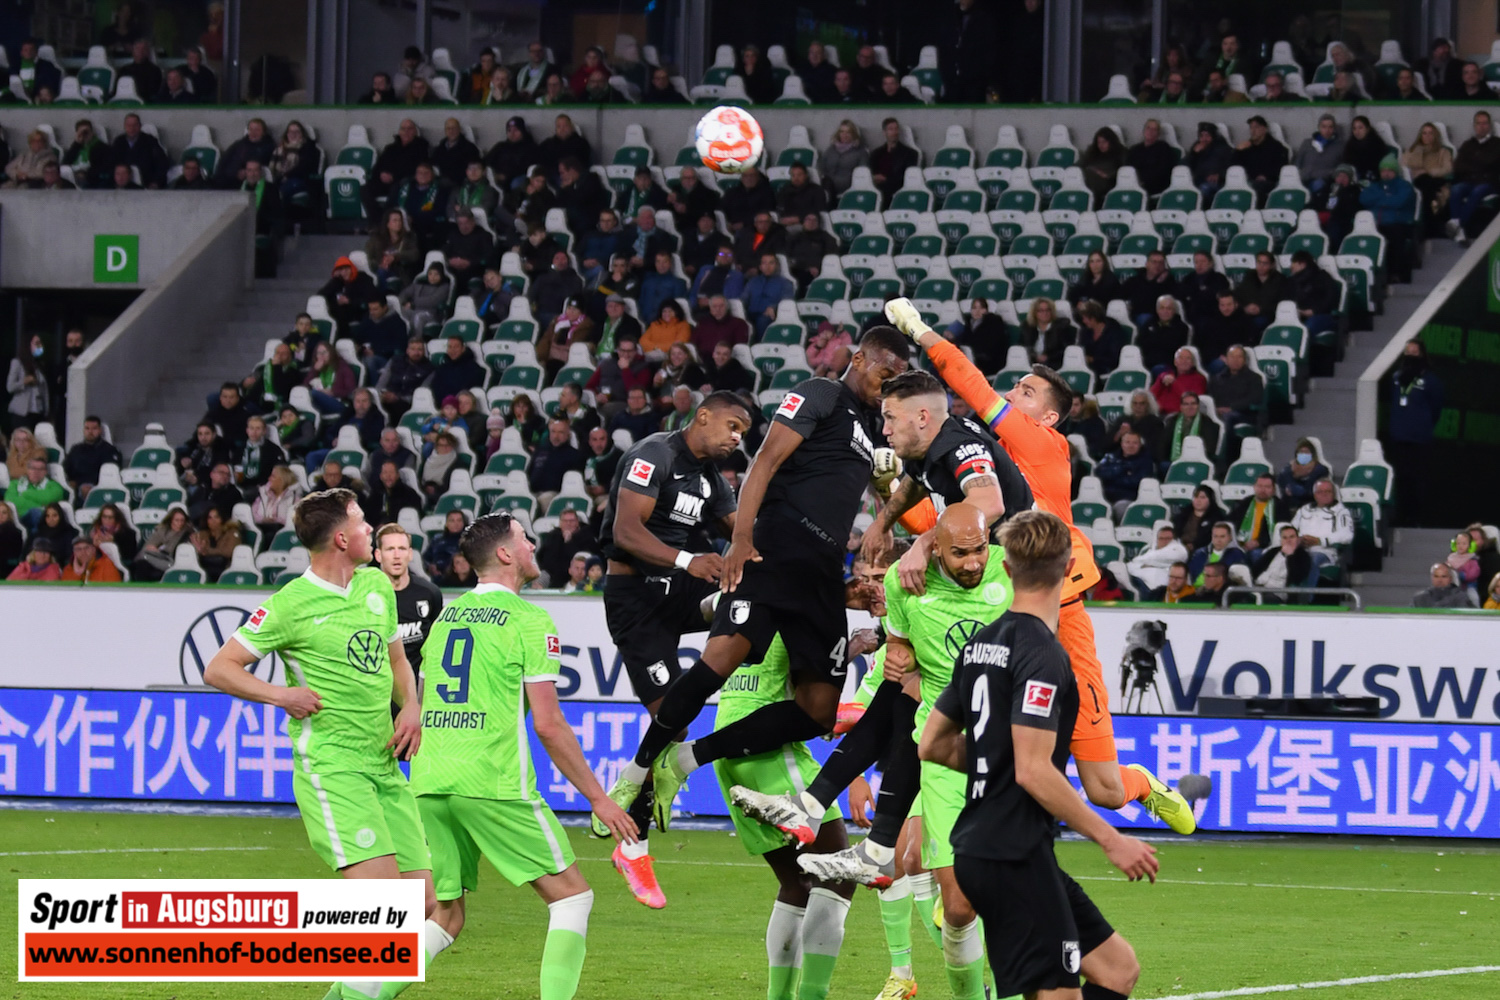 VfL Wolfsburg - FCA 06.11.21 - 45